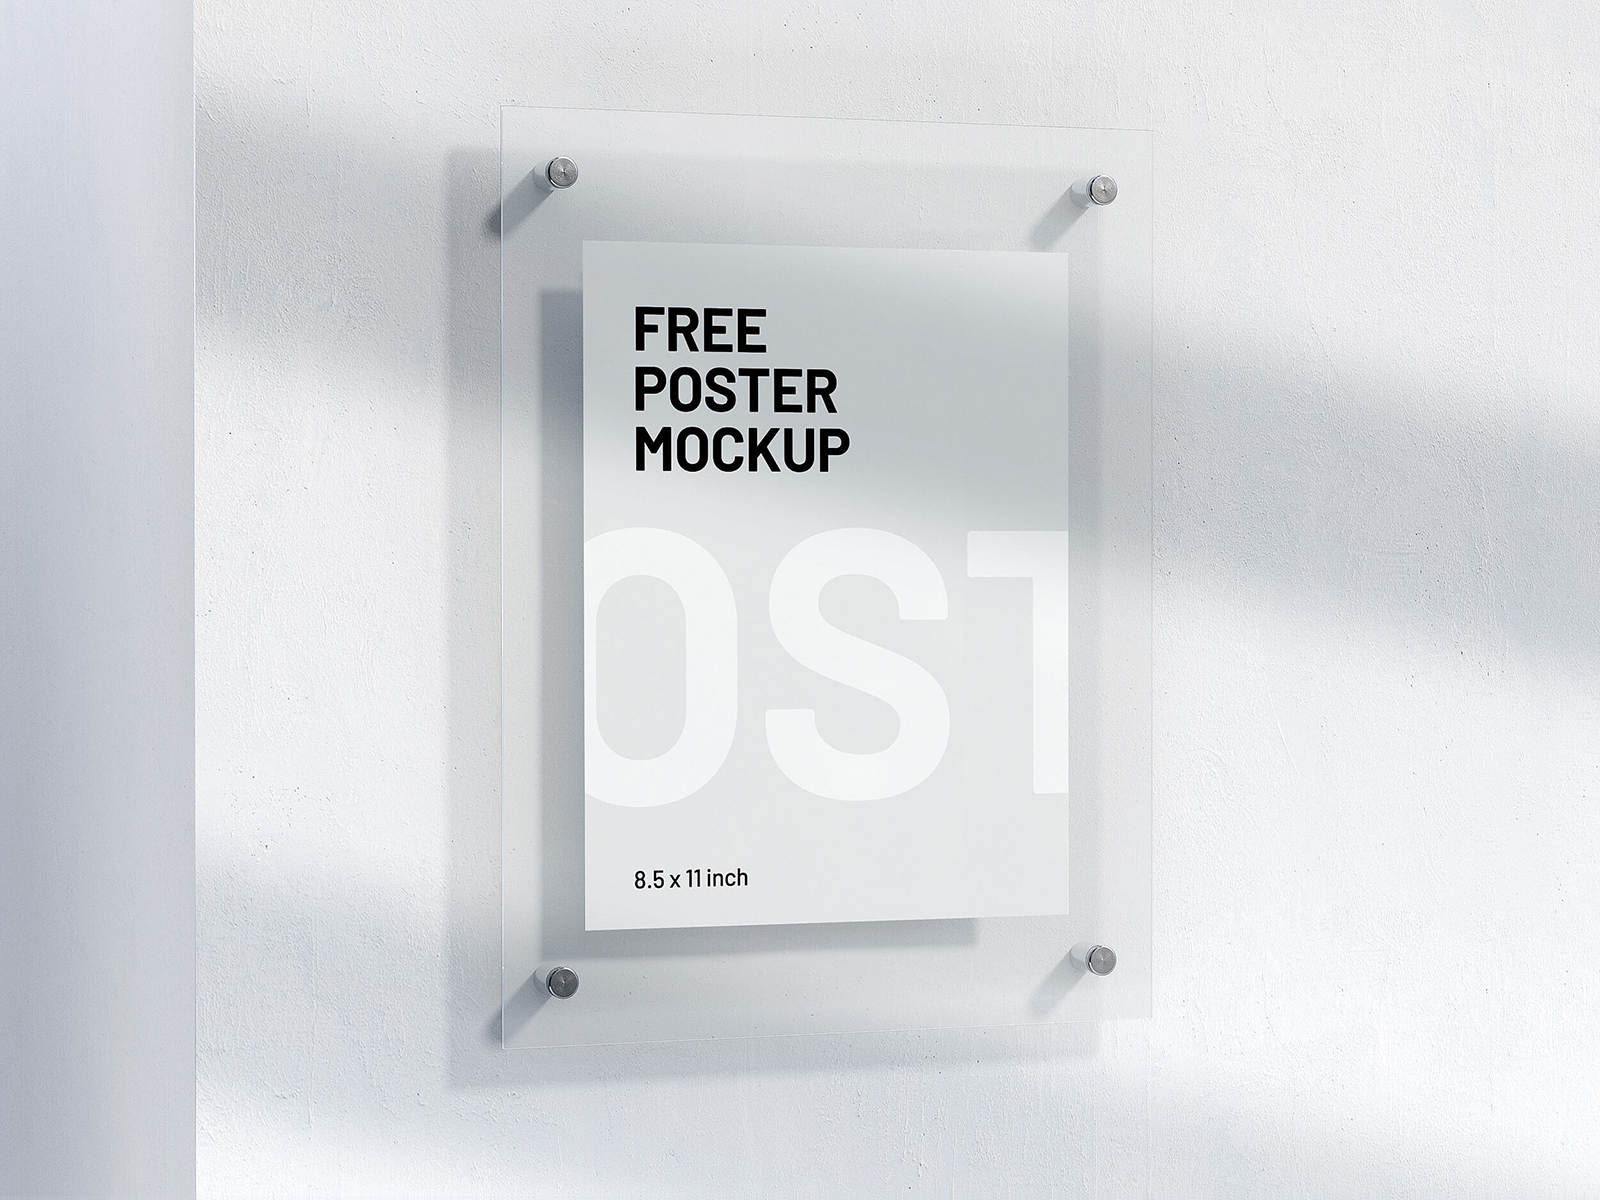 Download Free Letter Size Poster Mockup Free Mockup